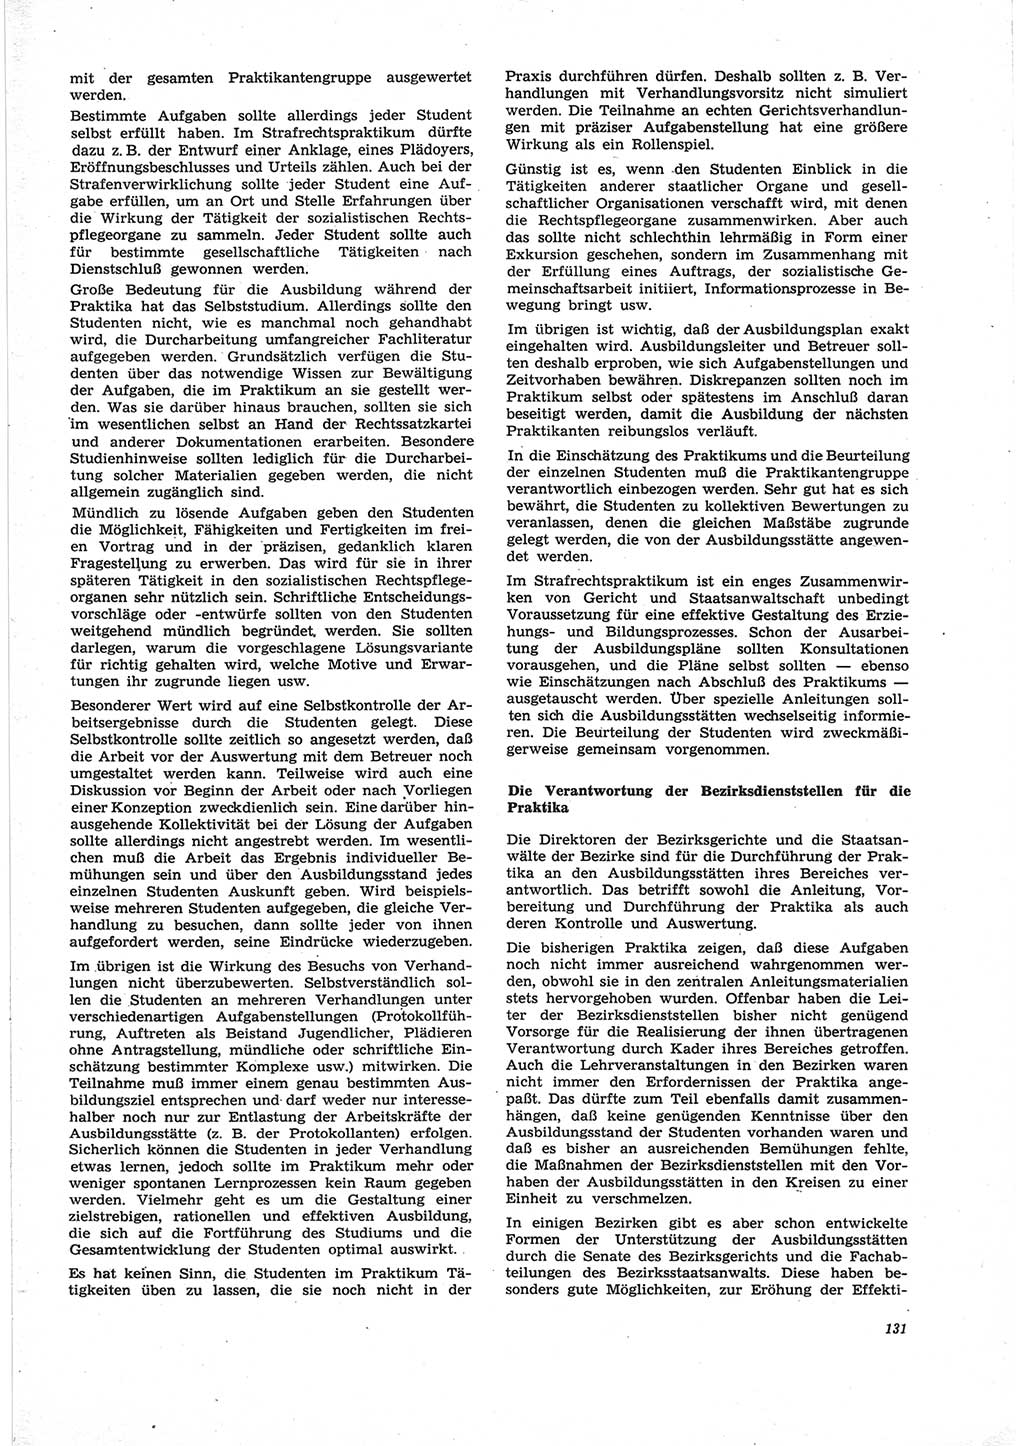 Neue Justiz (NJ), Zeitschrift für Recht und Rechtswissenschaft [Deutsche Demokratische Republik (DDR)], 25. Jahrgang 1971, Seite 131 (NJ DDR 1971, S. 131)